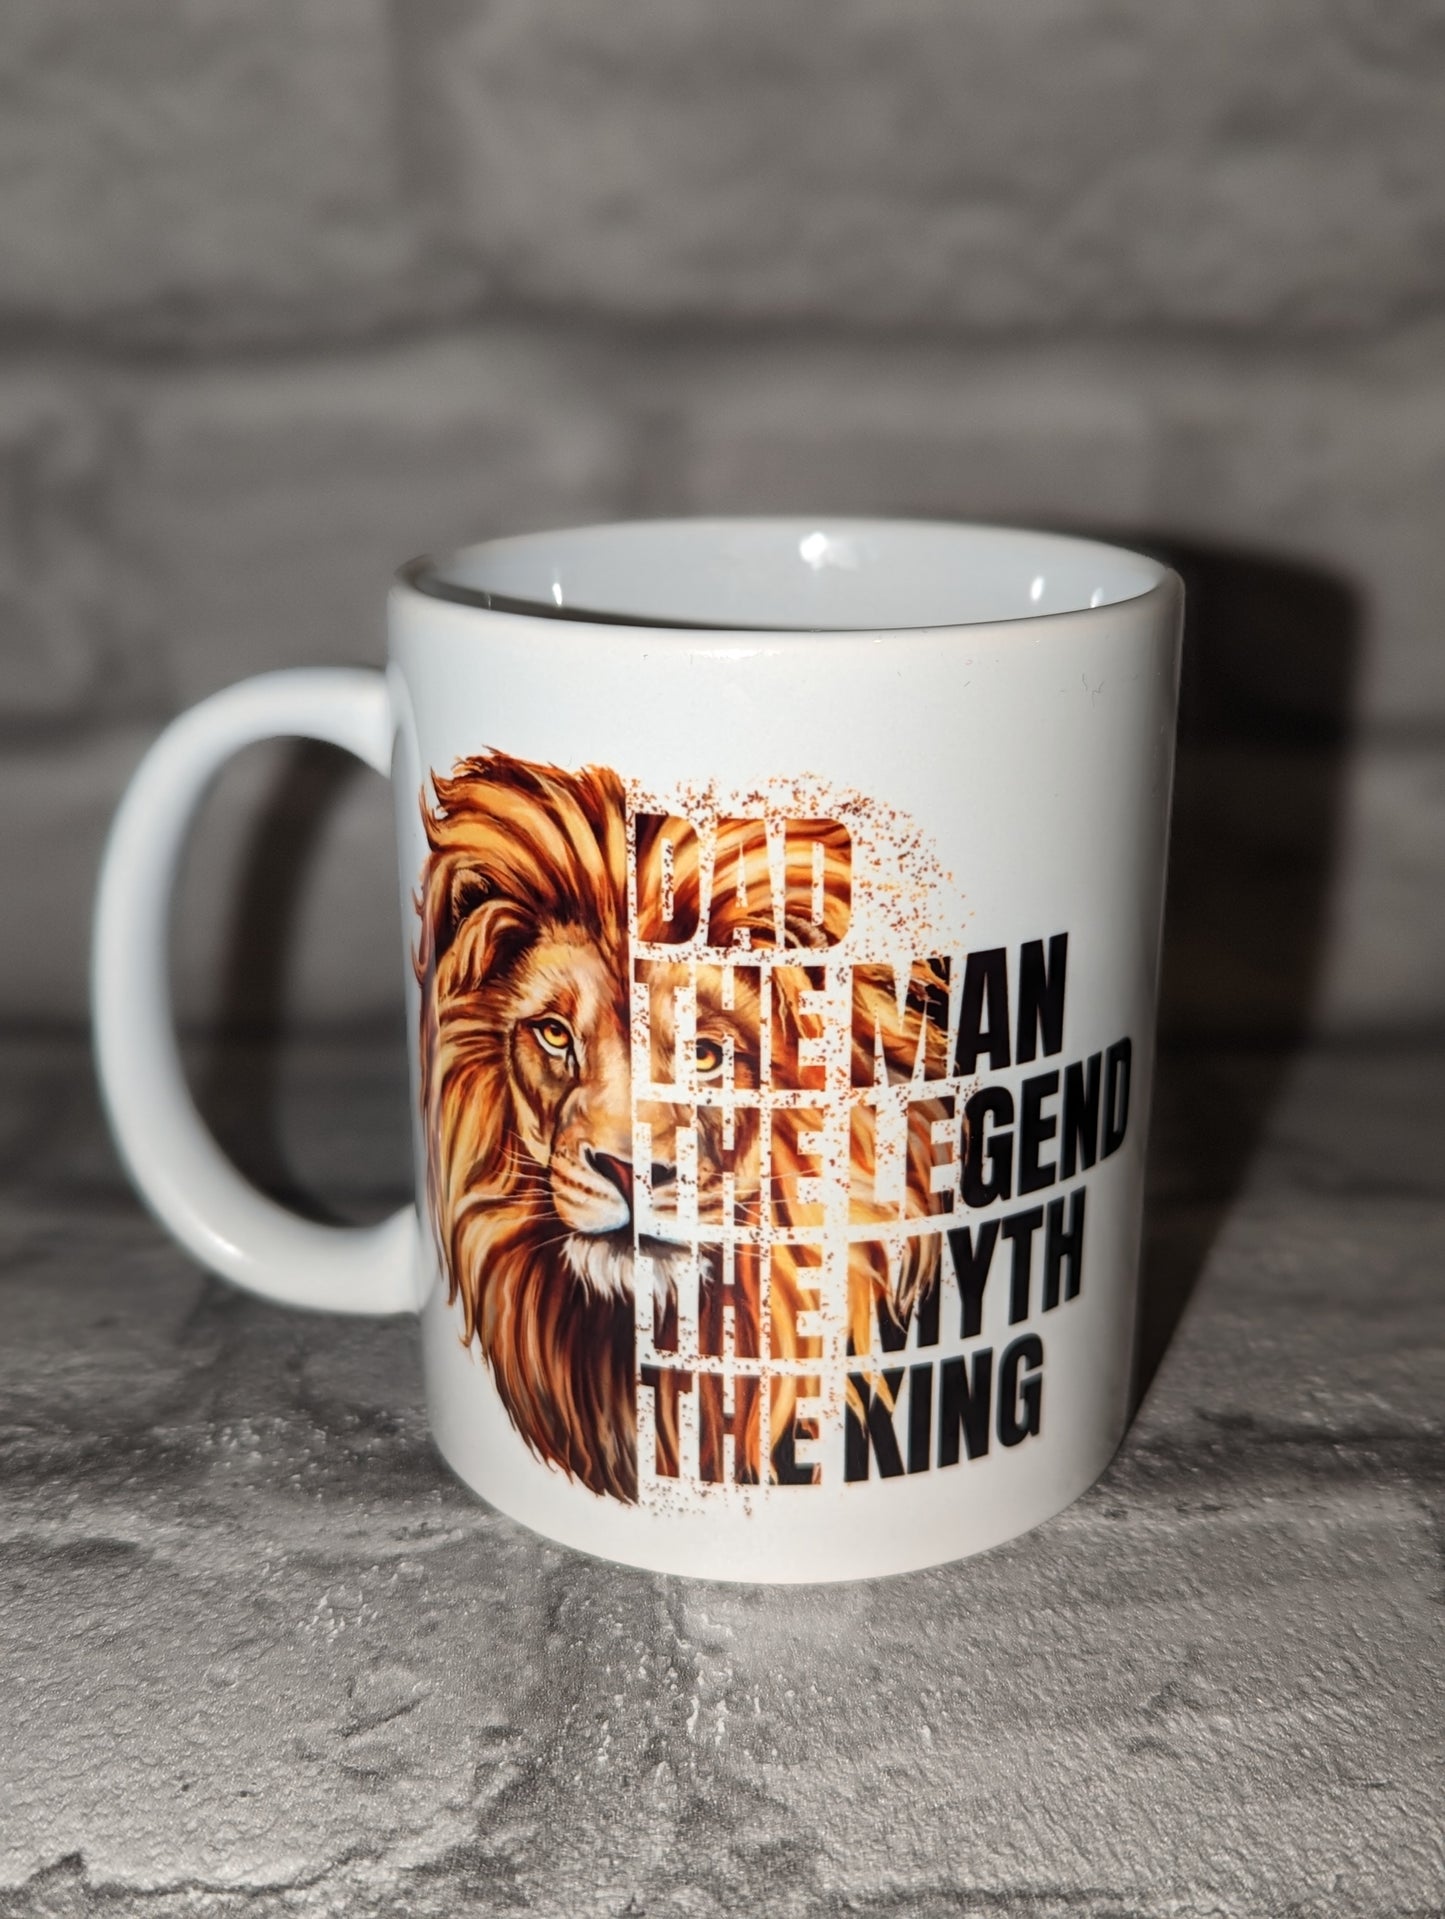 The king mug